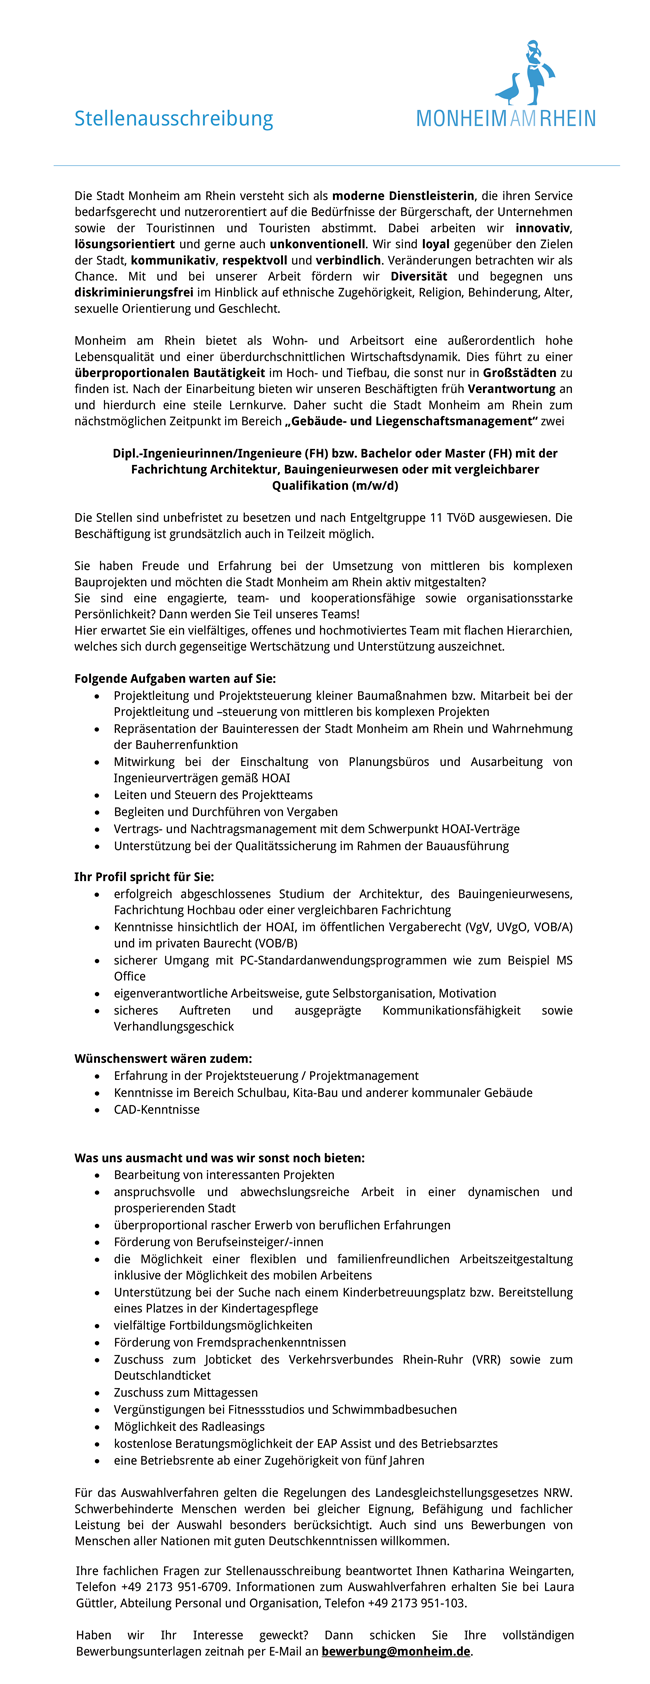  ijeab Stadt Monheim Dipl.-Ingenieurinnen/Ingenieure (m/w/d) FH /Bachelor FH/Fachrichtung Architektur stellencompass.de